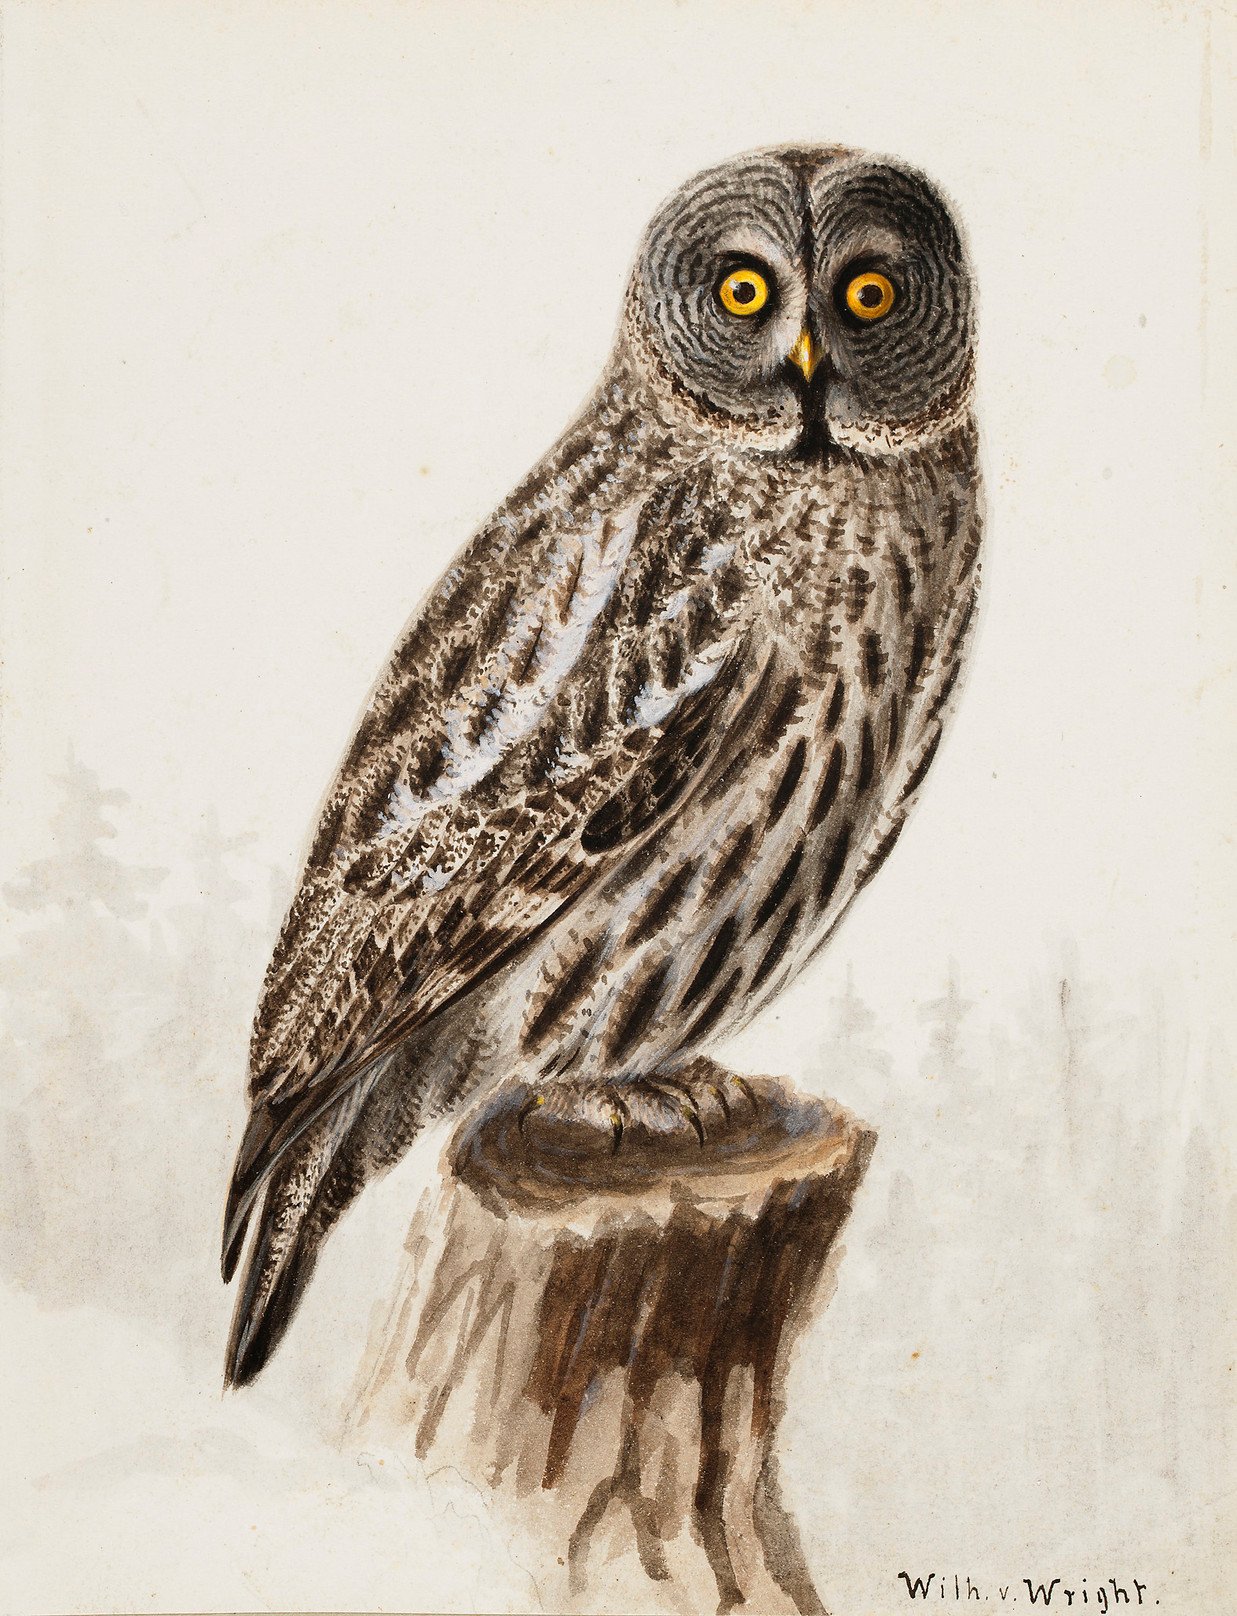 An owl on a wooden stump